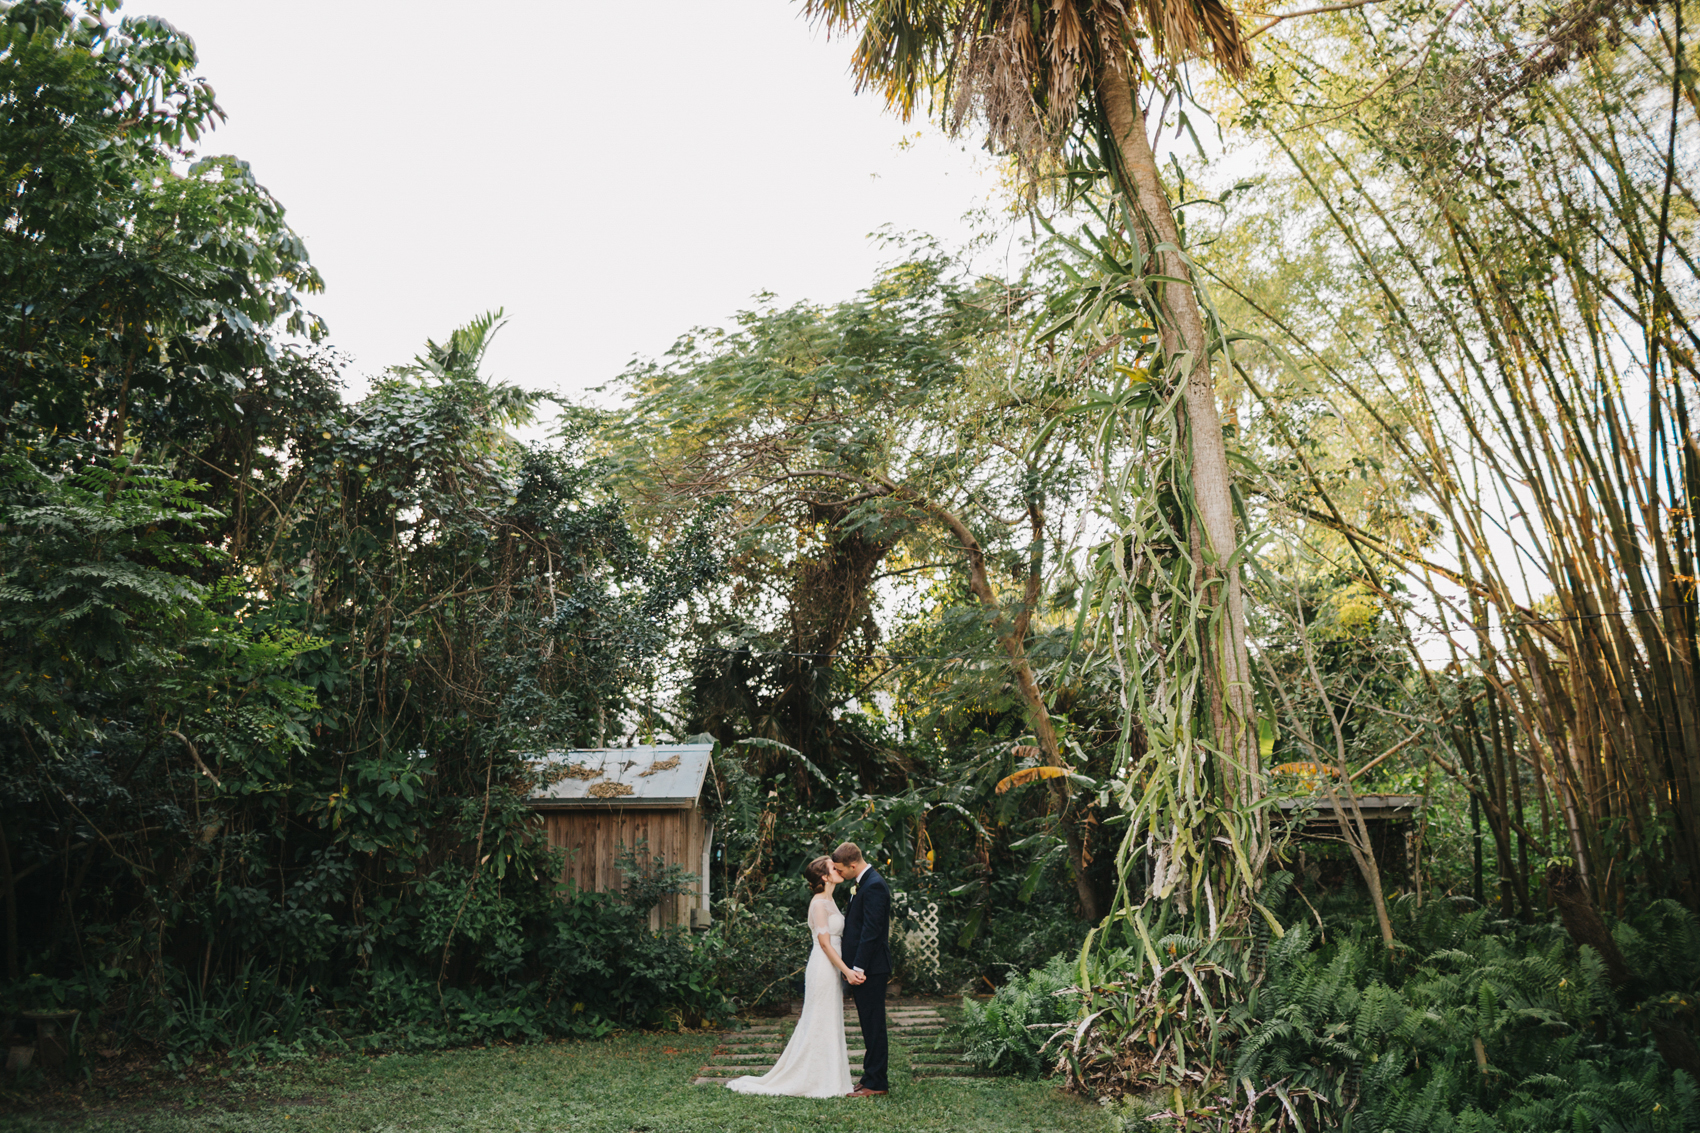 Orlando garden wedding photos